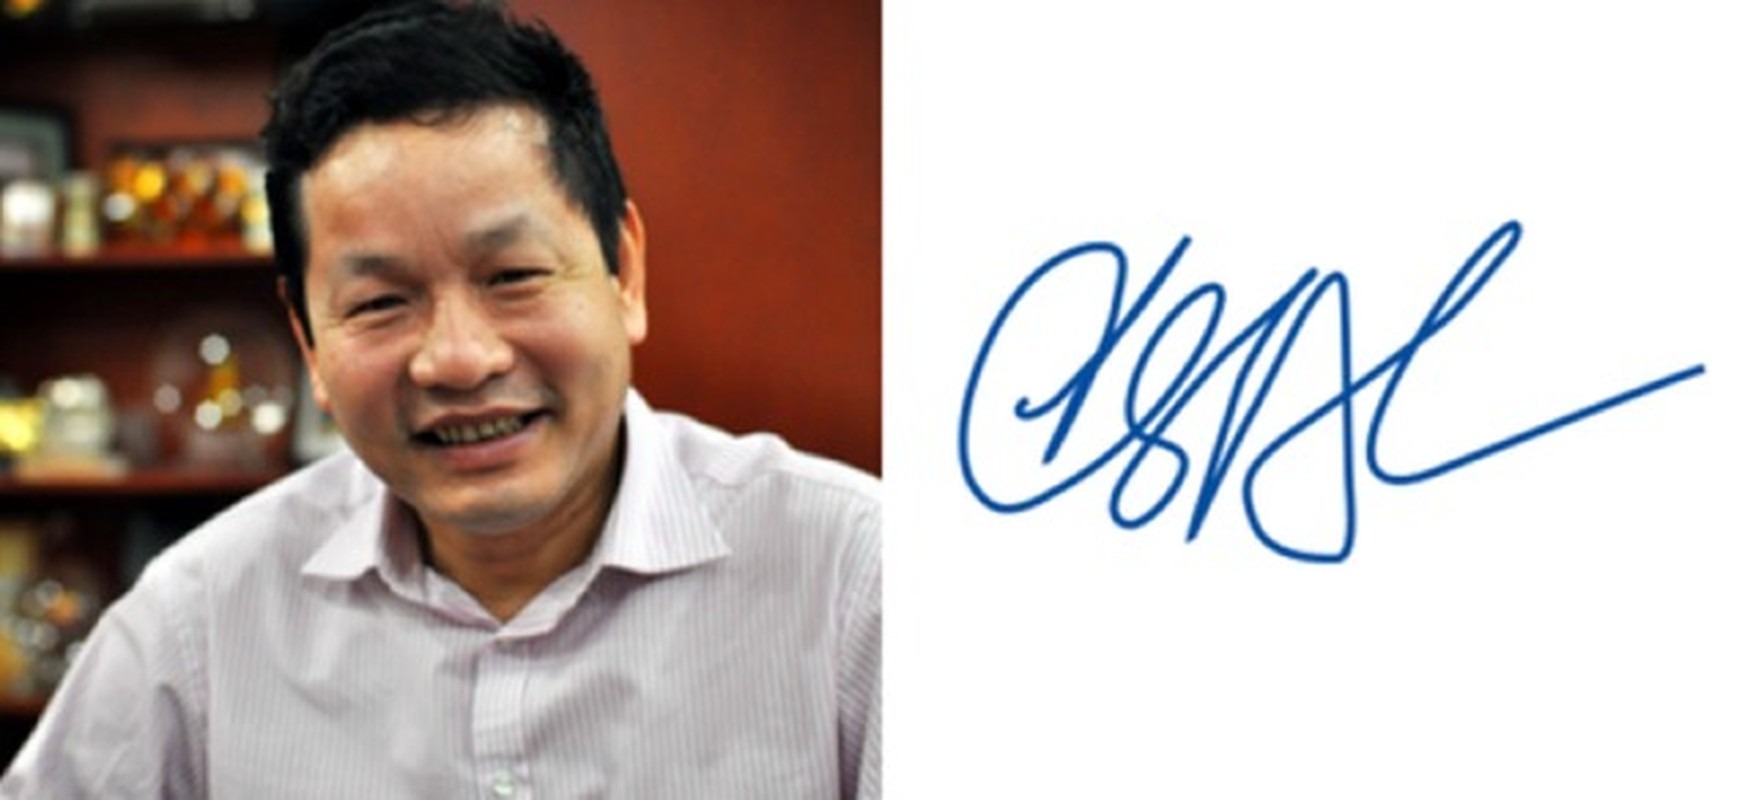 Cầu kỳ và đặc biệt là những tính từ mà nhiều người dành cho chữ ký của ông Trương Gia Bình - Chủ tịch tập đoàn FPT, chứng tỏ ông là một người luôn có xu hướng phát triển theo khía cạnh mới mẻ - Ảnh: Vietq